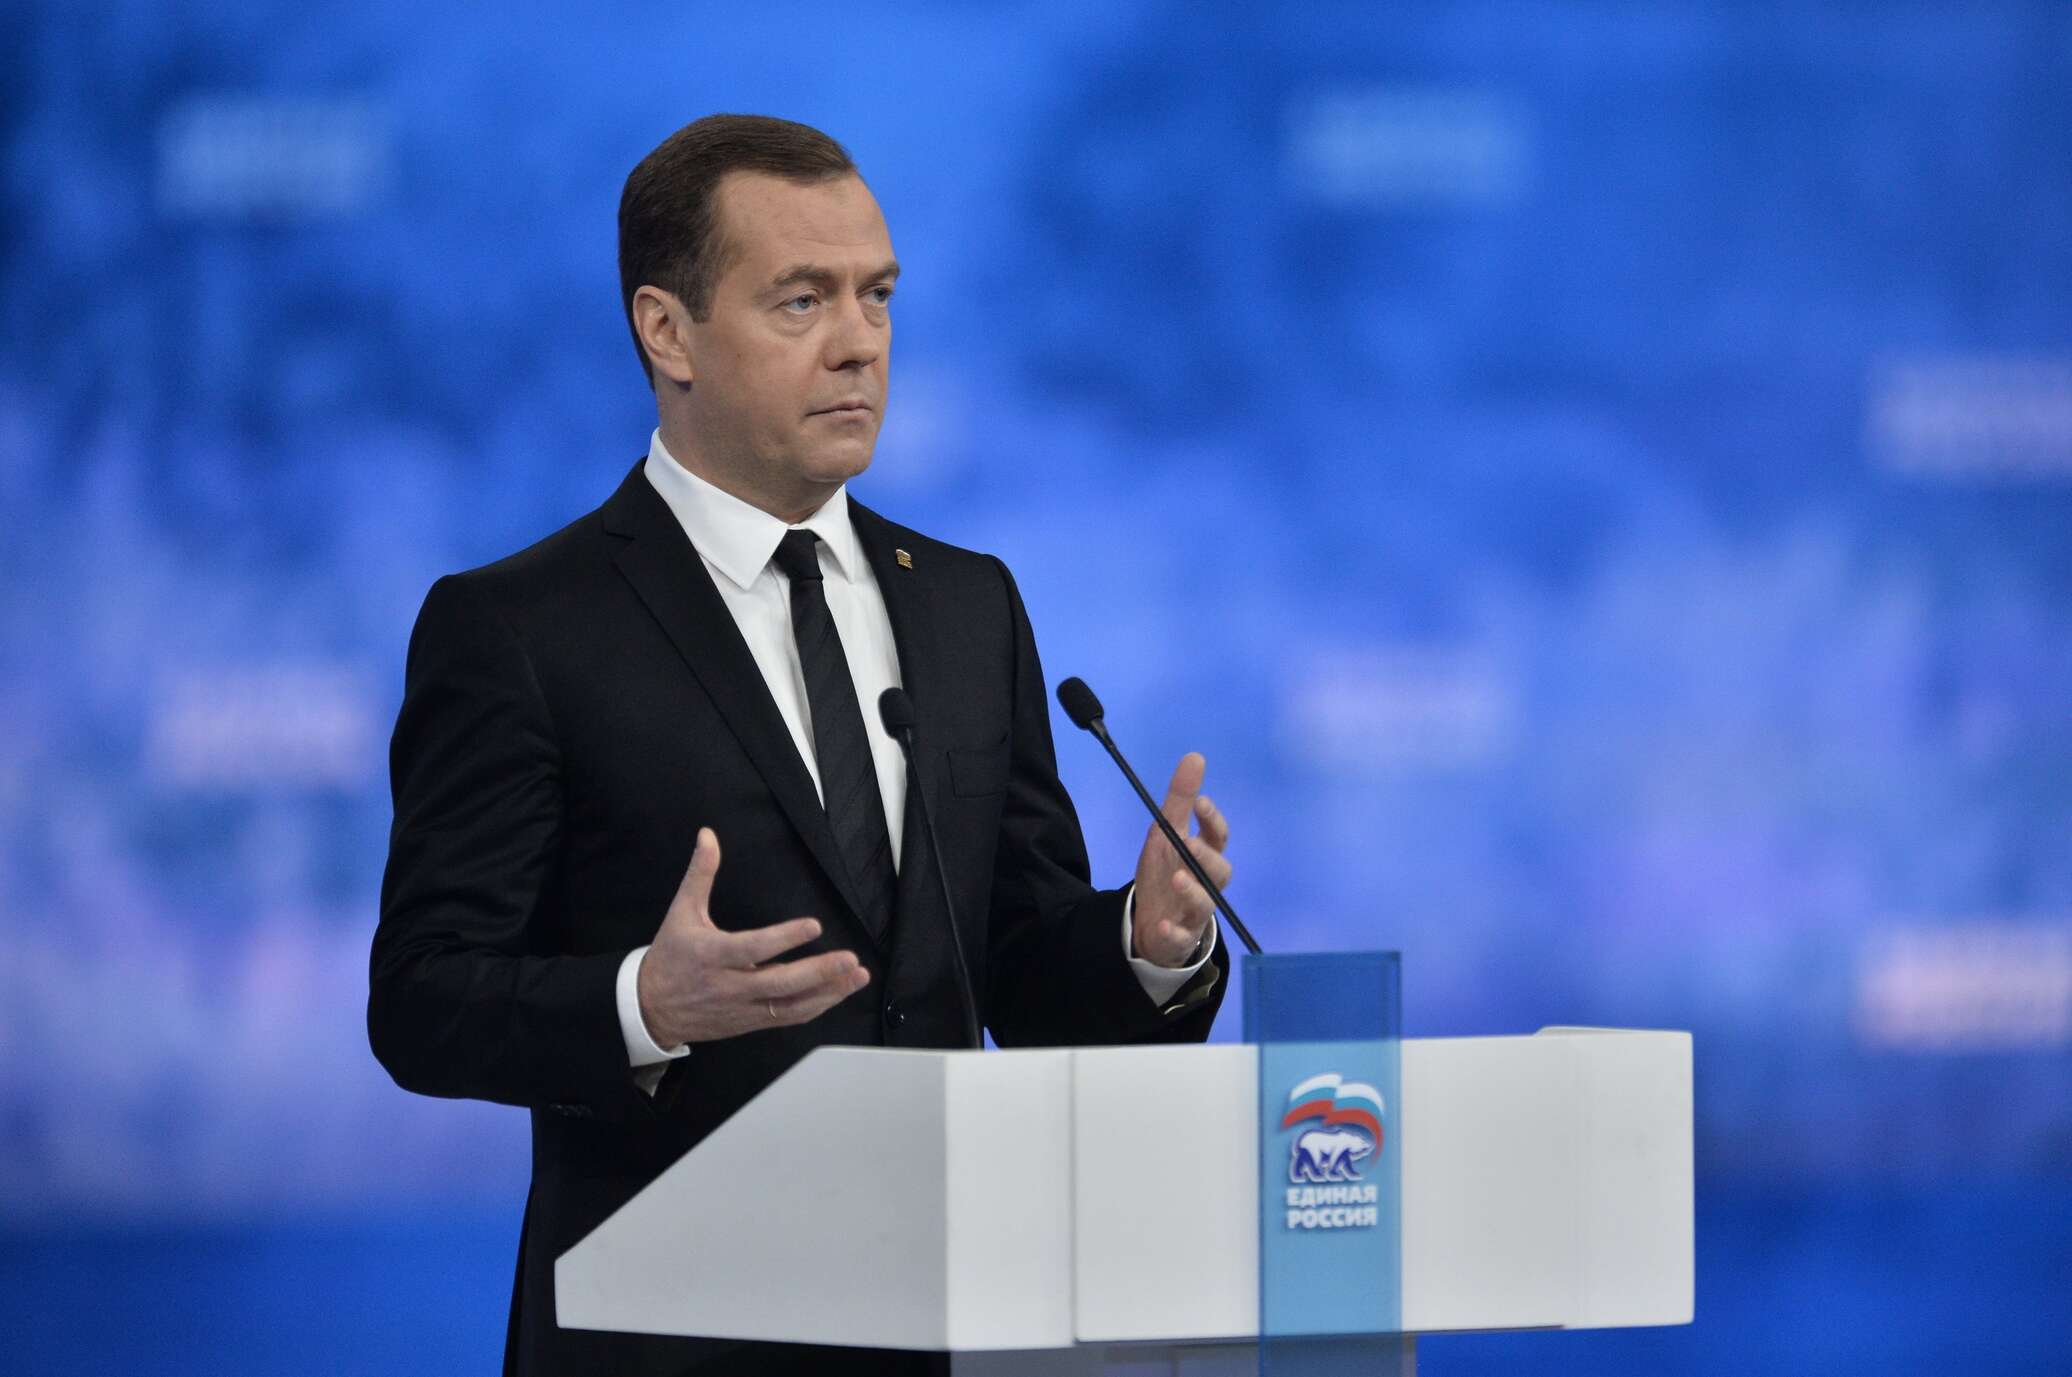 Политика последнего дня. Выступление Медведева с новыми реформами.